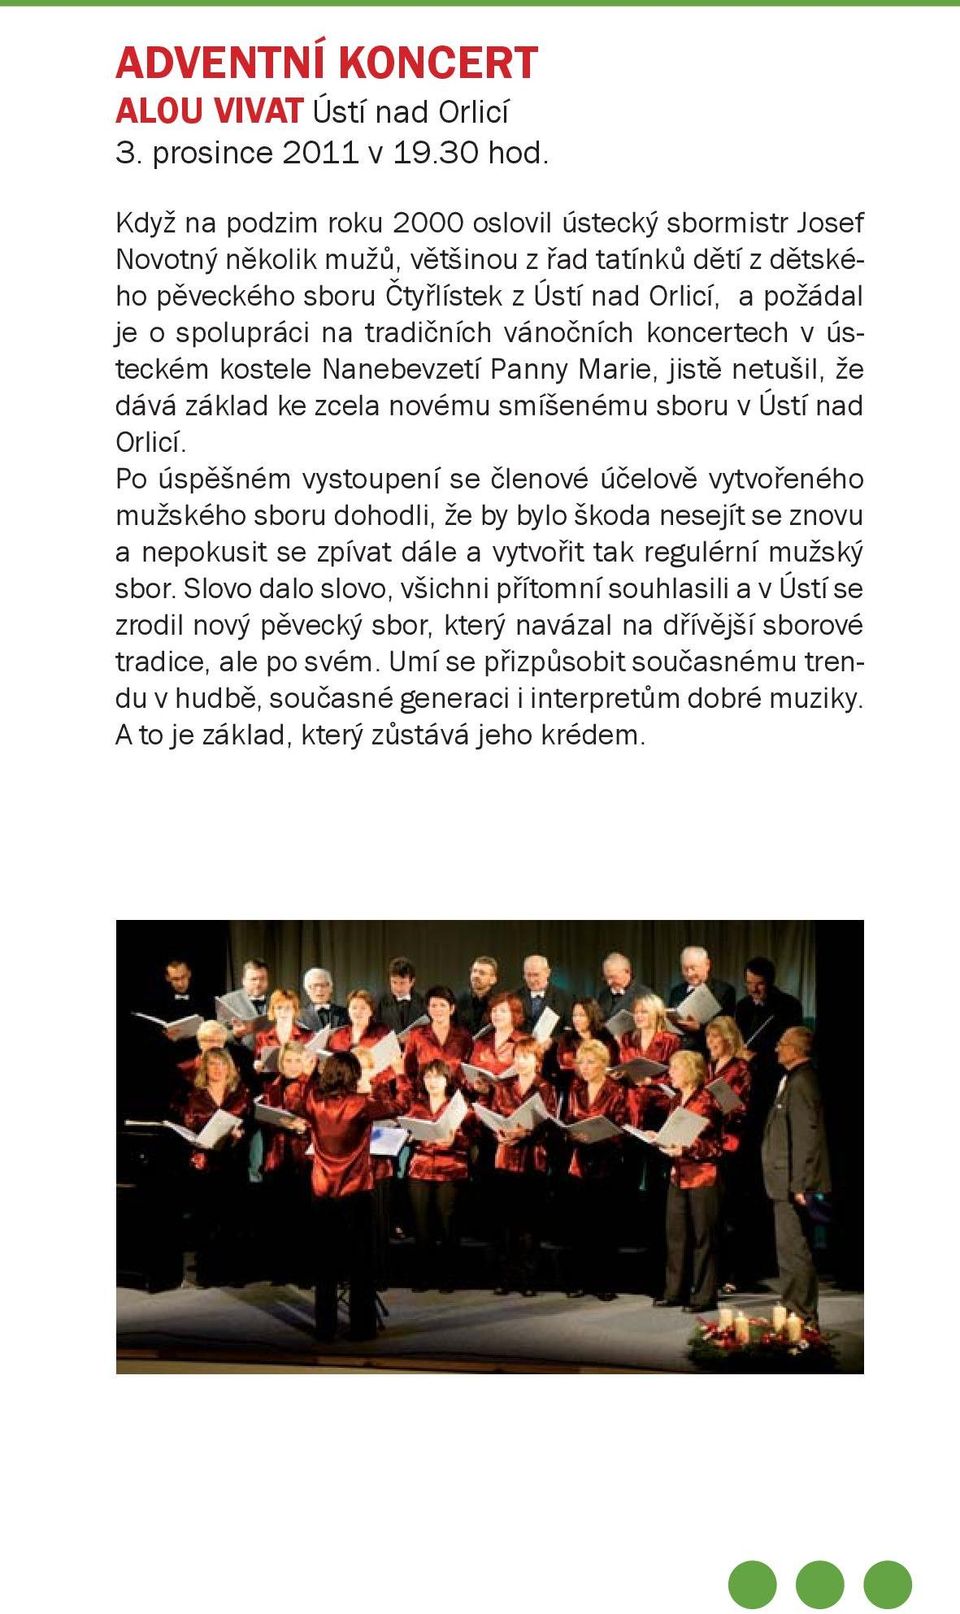 tradičních vánočních koncertech v ústeckém kostele Nanebevzetí Panny Marie, jistě netušil, že dává základ ke zcela novému smíšenému sboru v Ústí nad Orlicí.